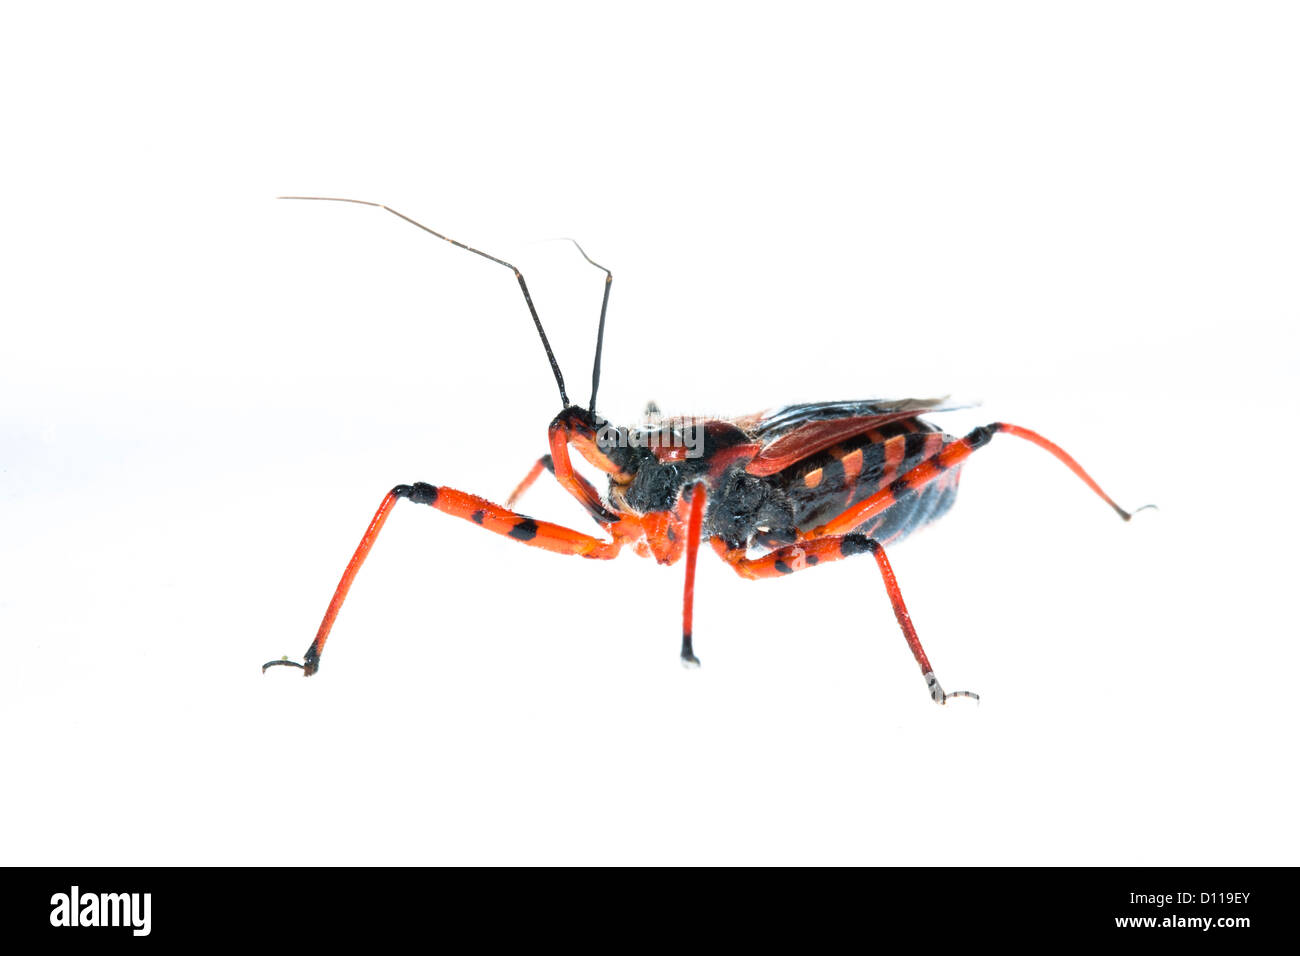 Bug Assassin rouge (Rhynocoris iracundus). Insecte photographié sur un fond blanc sur un studio portable. La France. Juin Banque D'Images